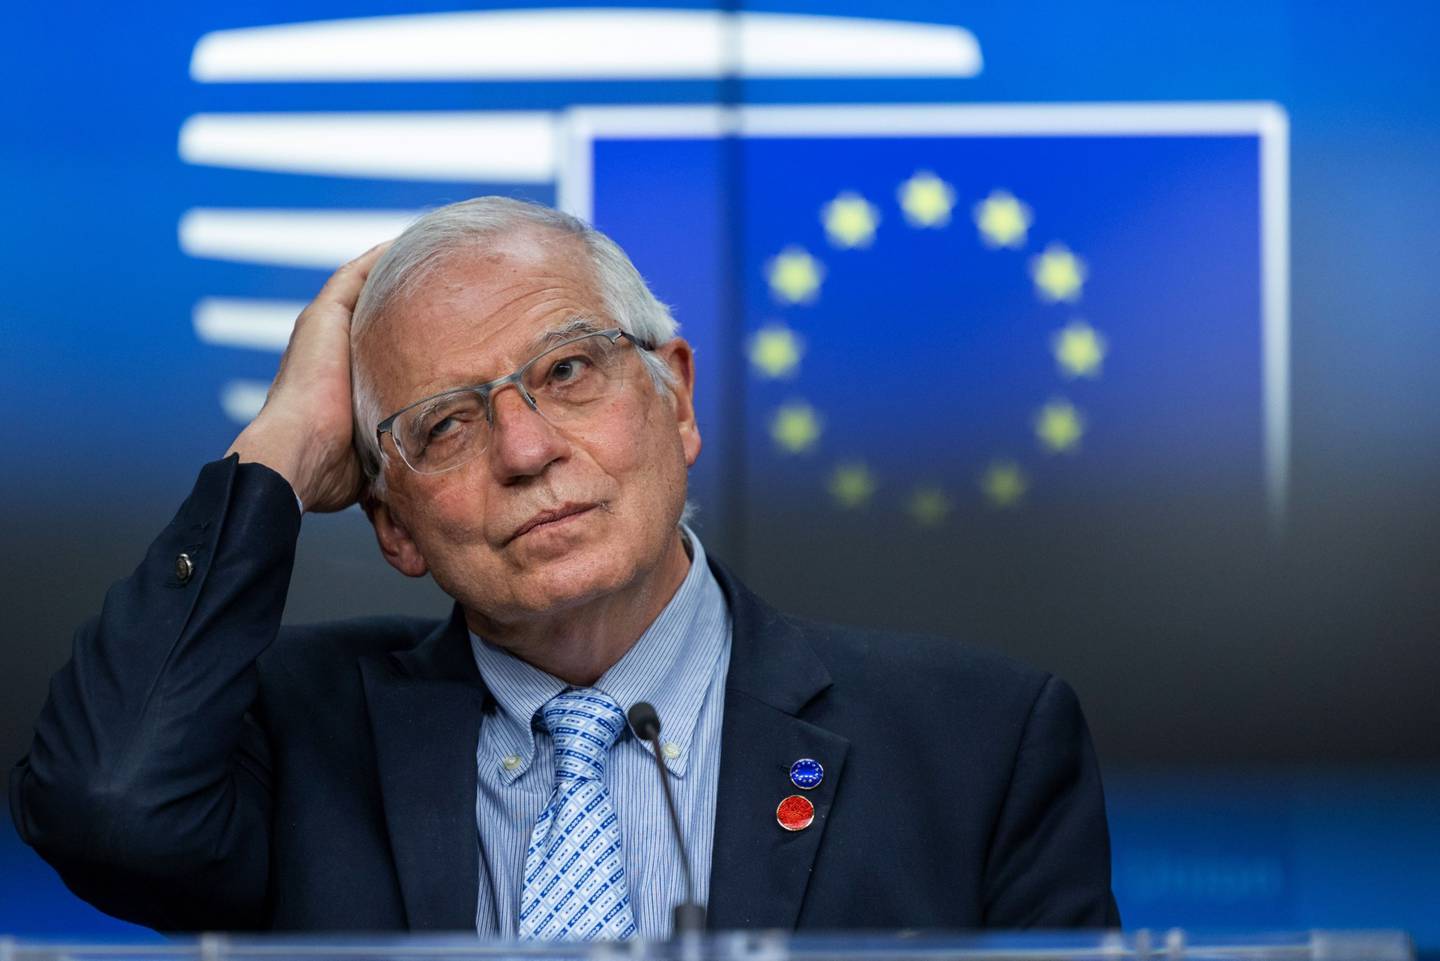 Josep Borrell, vicepresidente de la Comisión Europea, reacciona durante una conferencia de prensa posterior a una reunión del consejo de asuntos exteriores en Bruselas, Bélgica, el jueves 6 de mayo de 2021. dfd